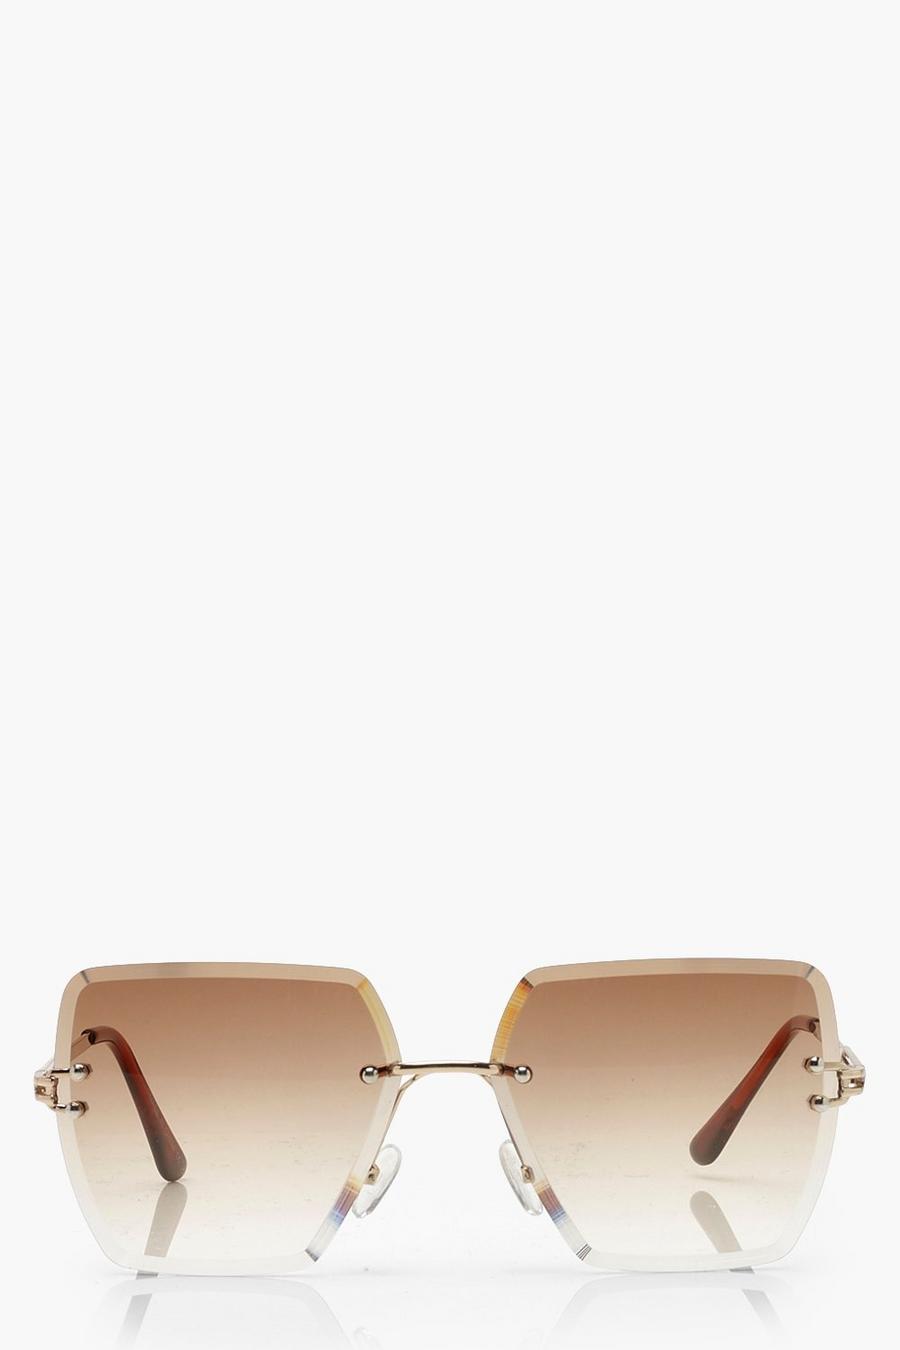 Brown Fyrkantiga båglösa solglasögon i vintagestil